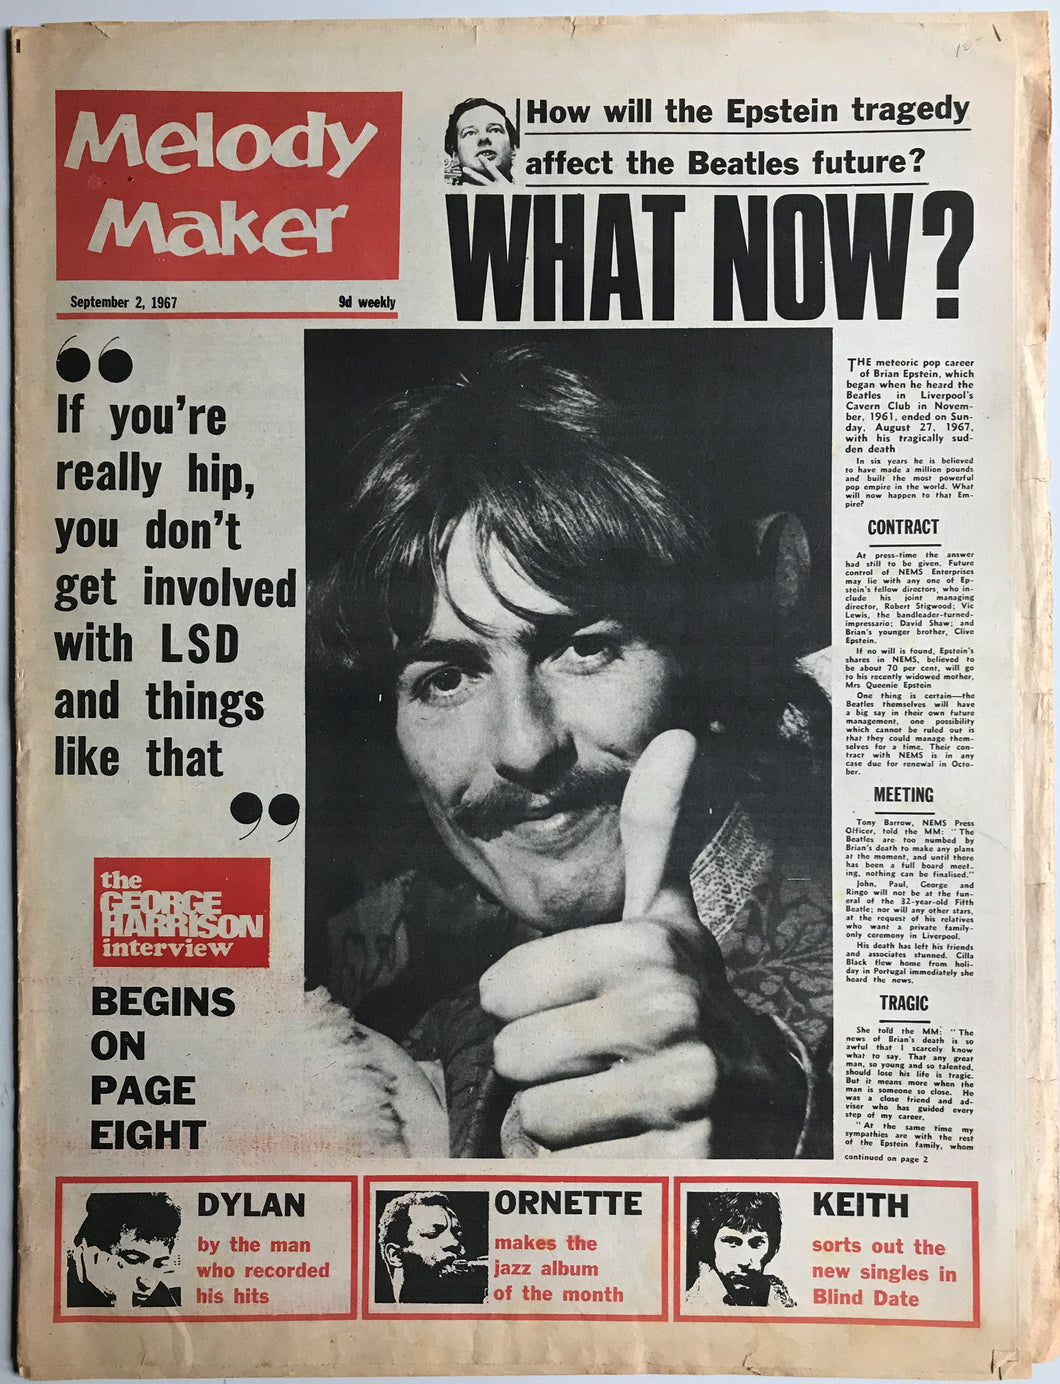 Beatles - Melody Maker September 2, 1967